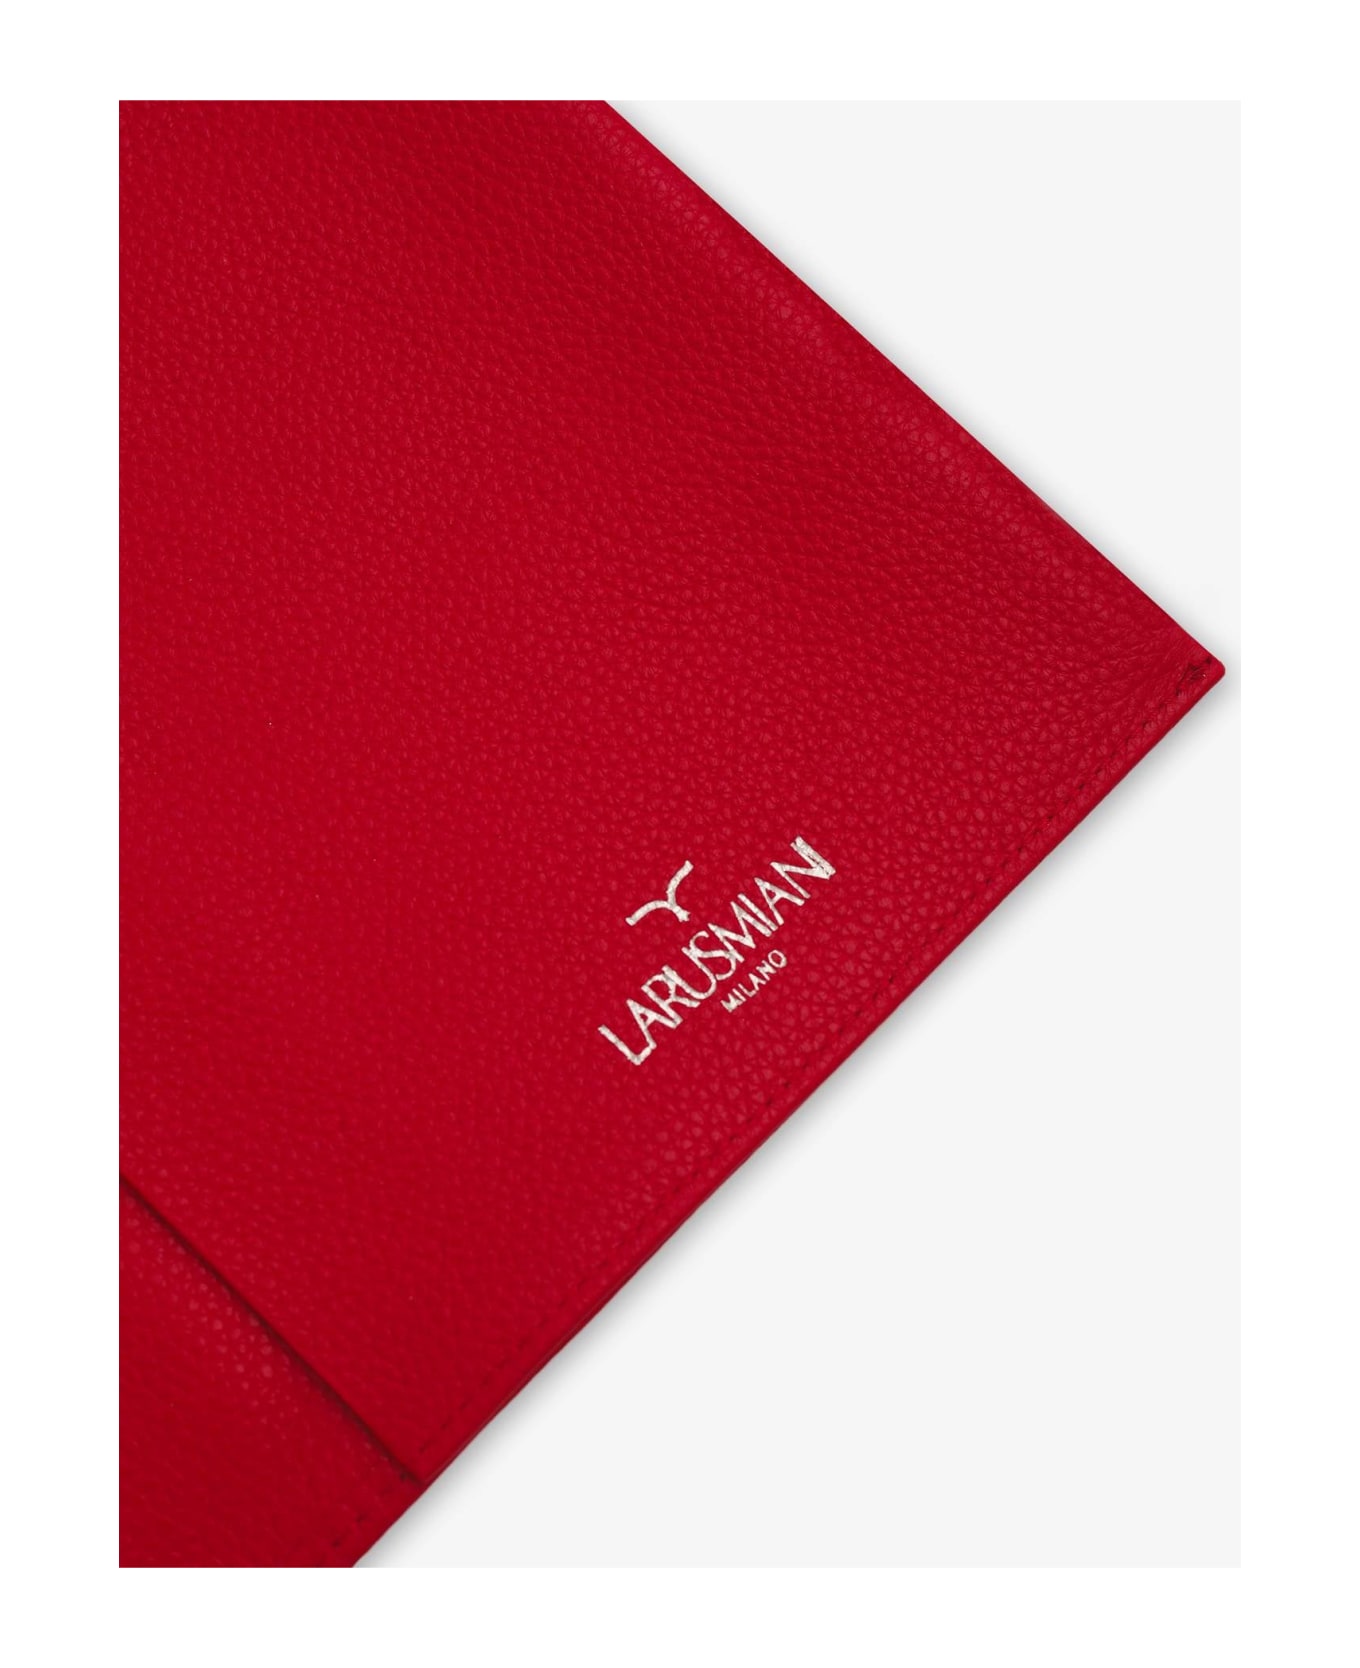 Larusmiani Leather Car Folder  - Red インテリア雑貨